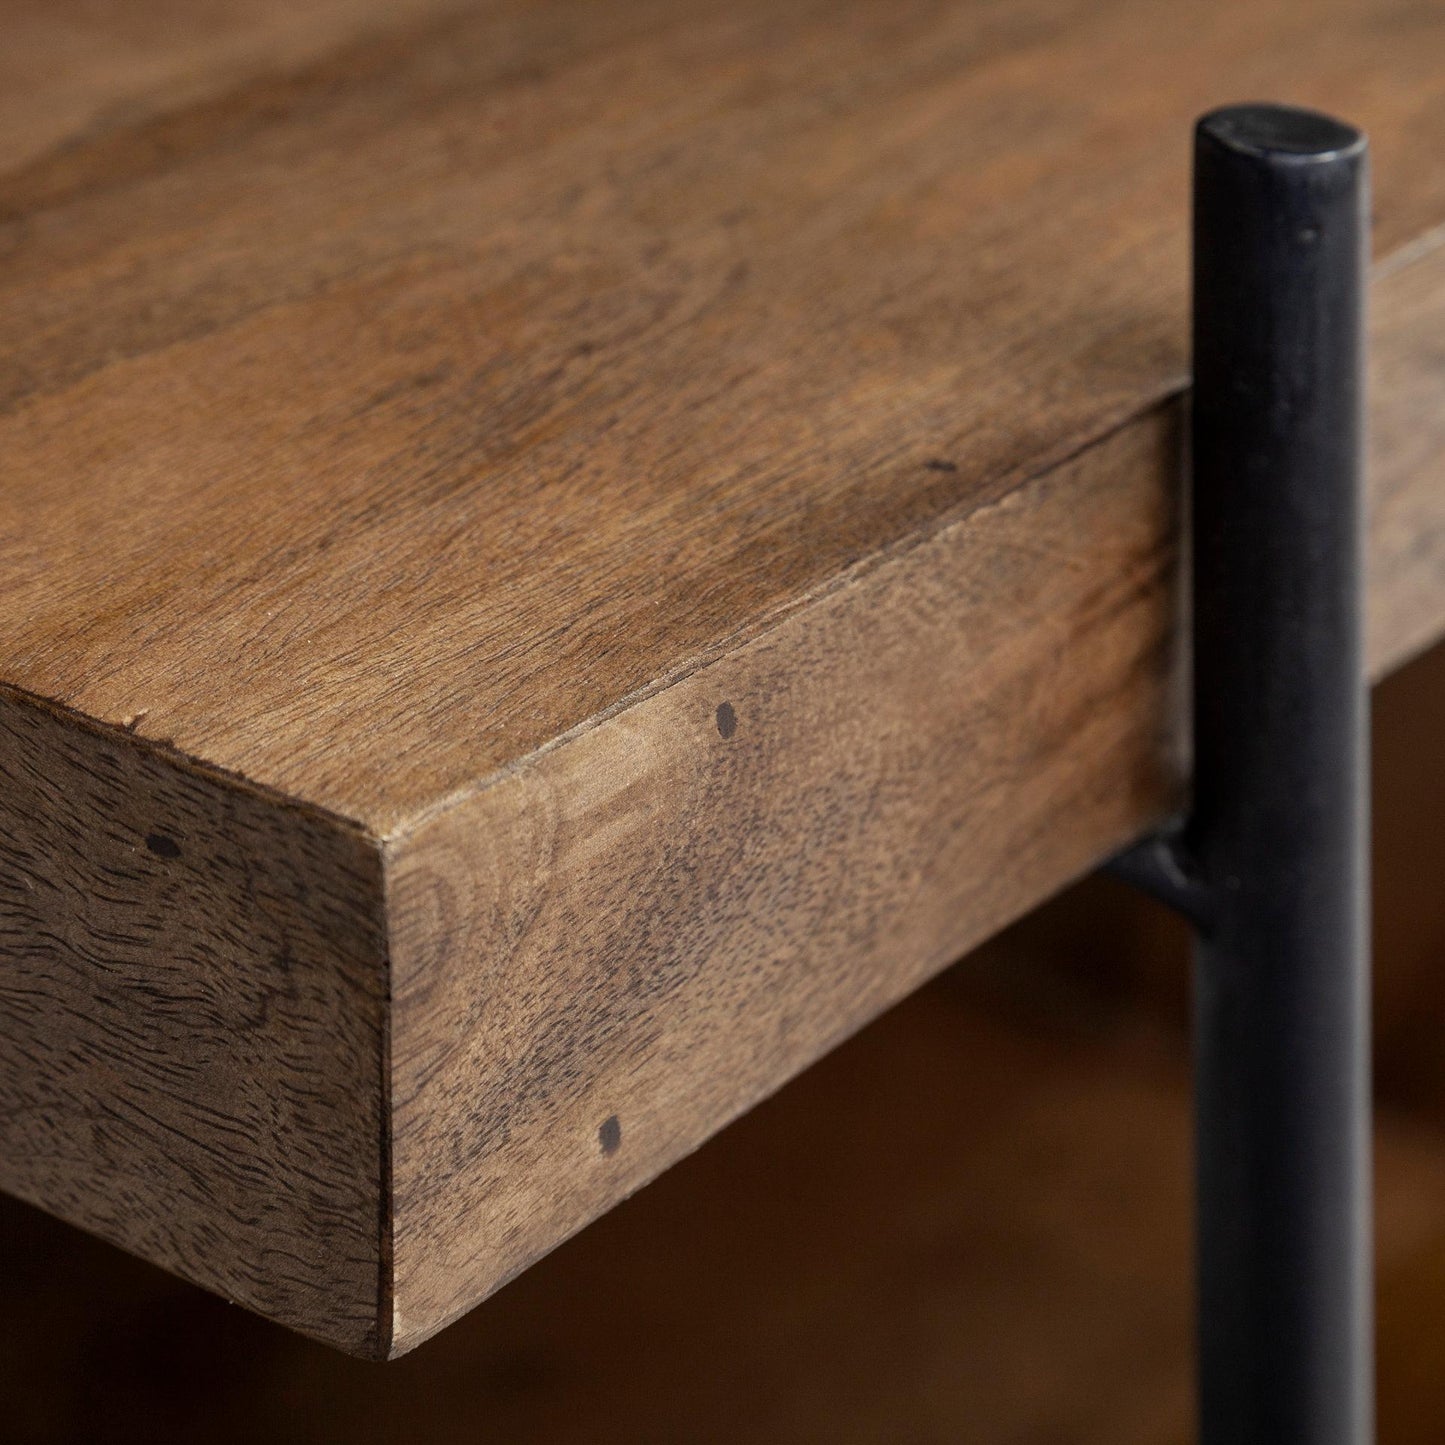 Maddox 30L x 18W x 22H Medium Brown Wood w/ Black Metal U-shaped End/Side Table